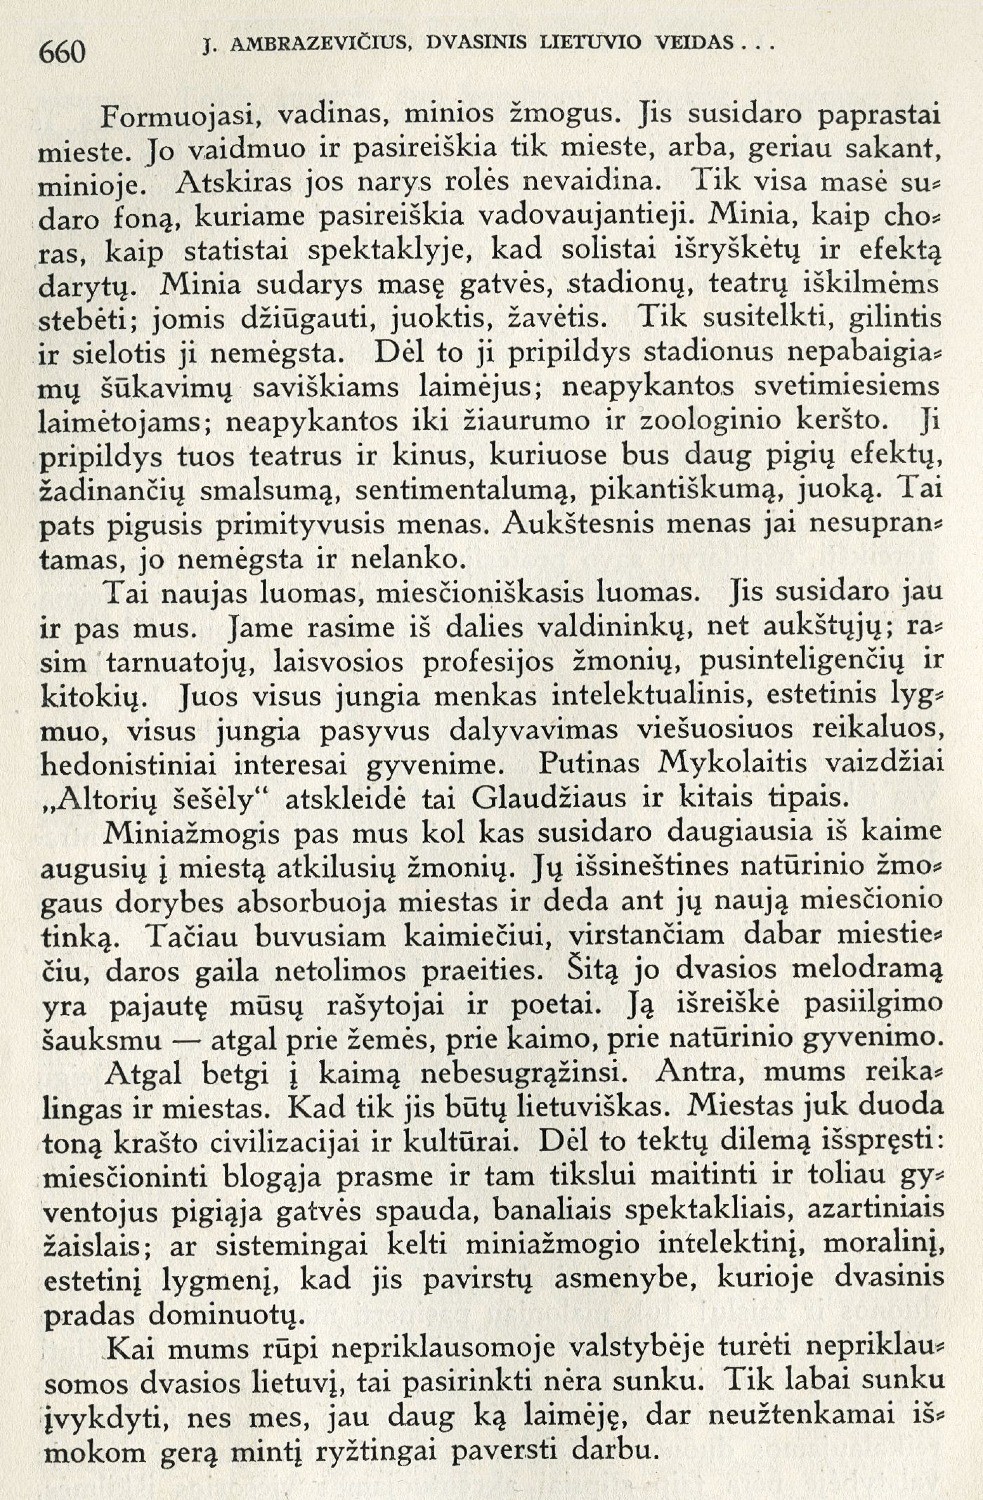 Dvasinis lietuvio veidas Nepriklausomoj Lietuvoj / J. Ambrazevičius // Židinys. – 1938, Nr. 5/6, p. 652–660.